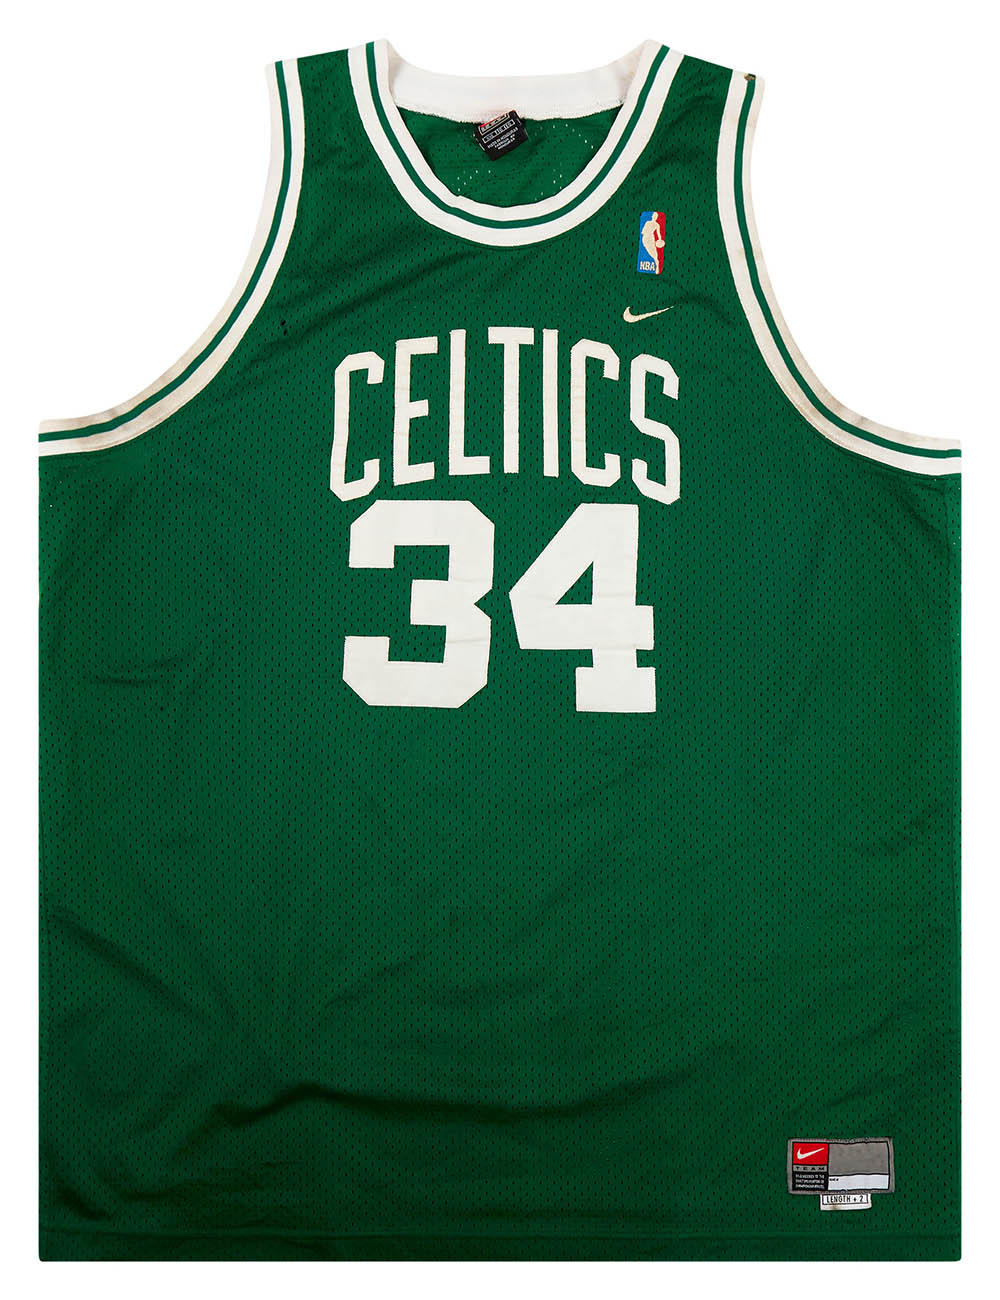 Boston Celtics NBA Jersey #34 Pierce (L) Champion Jersey